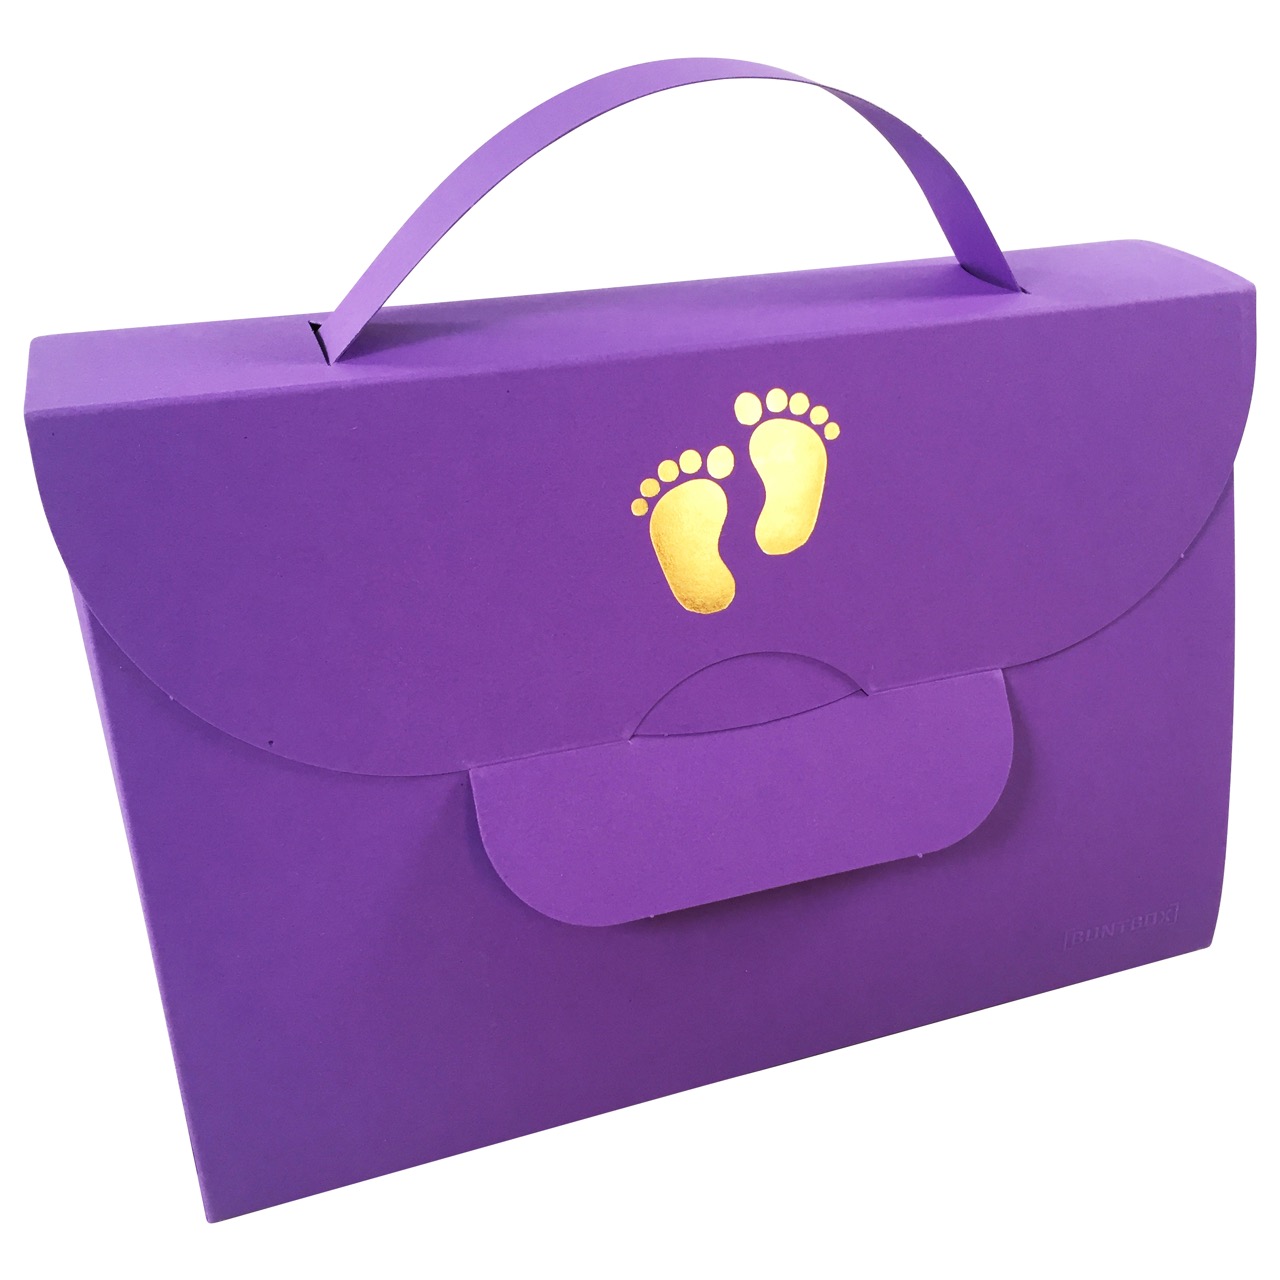 Buntbox Handbag Piedino del bambino